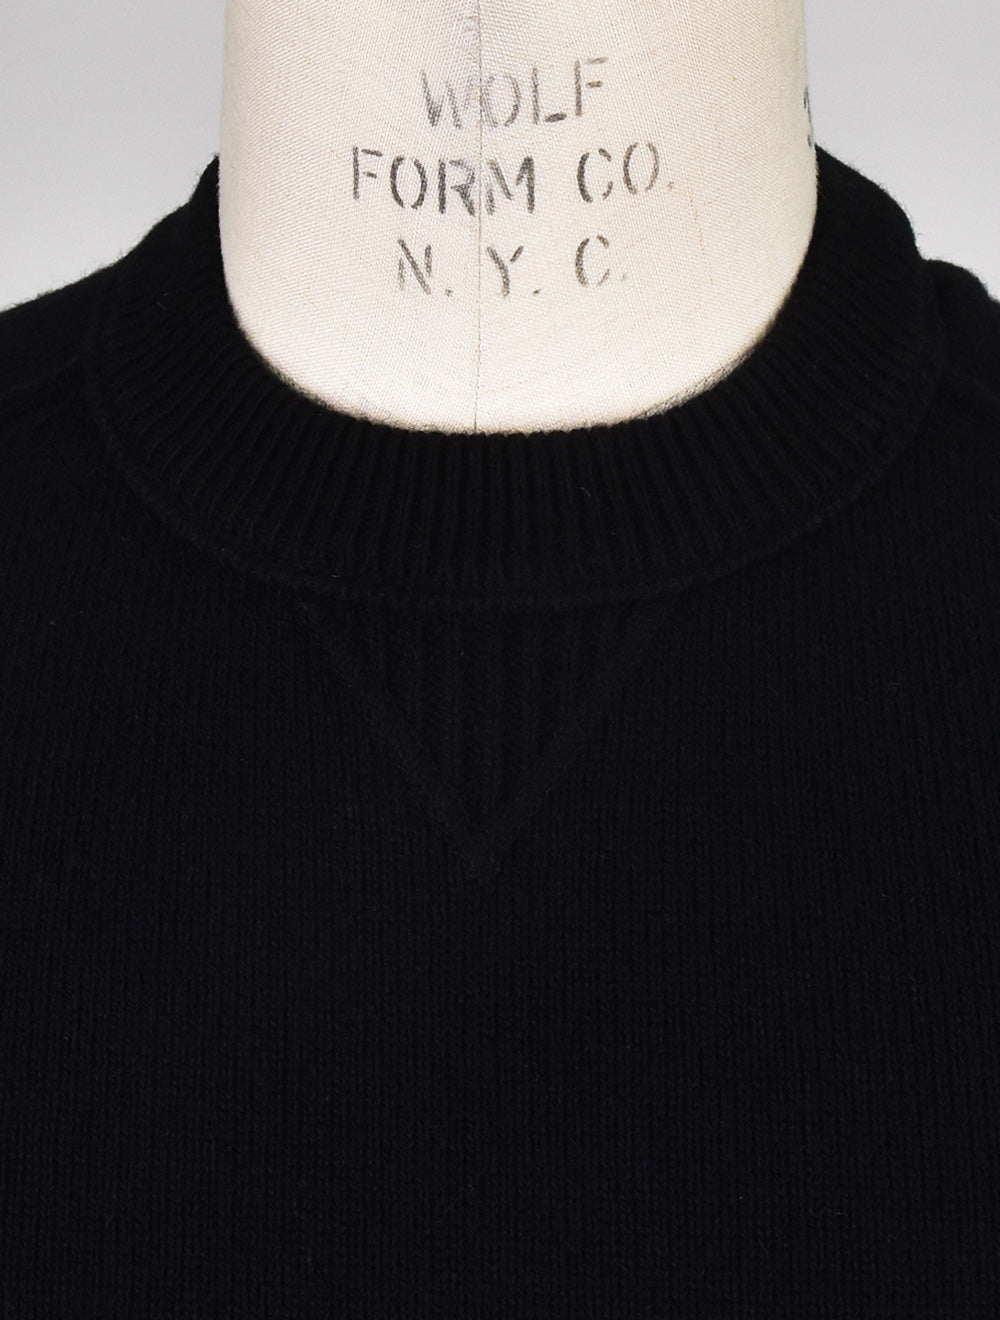 Hugo Boss Black Cotton Wool Pa Sweater